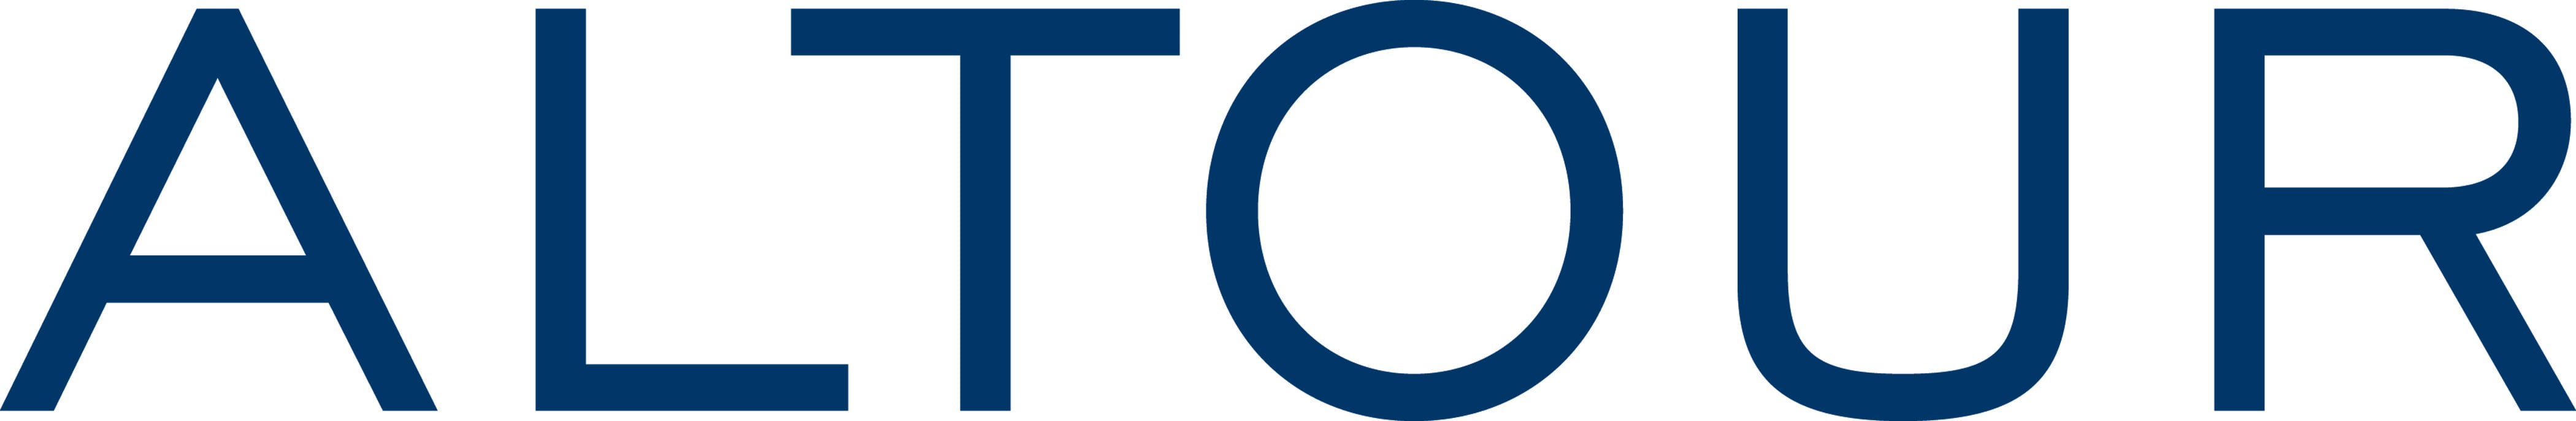 altour travel logo